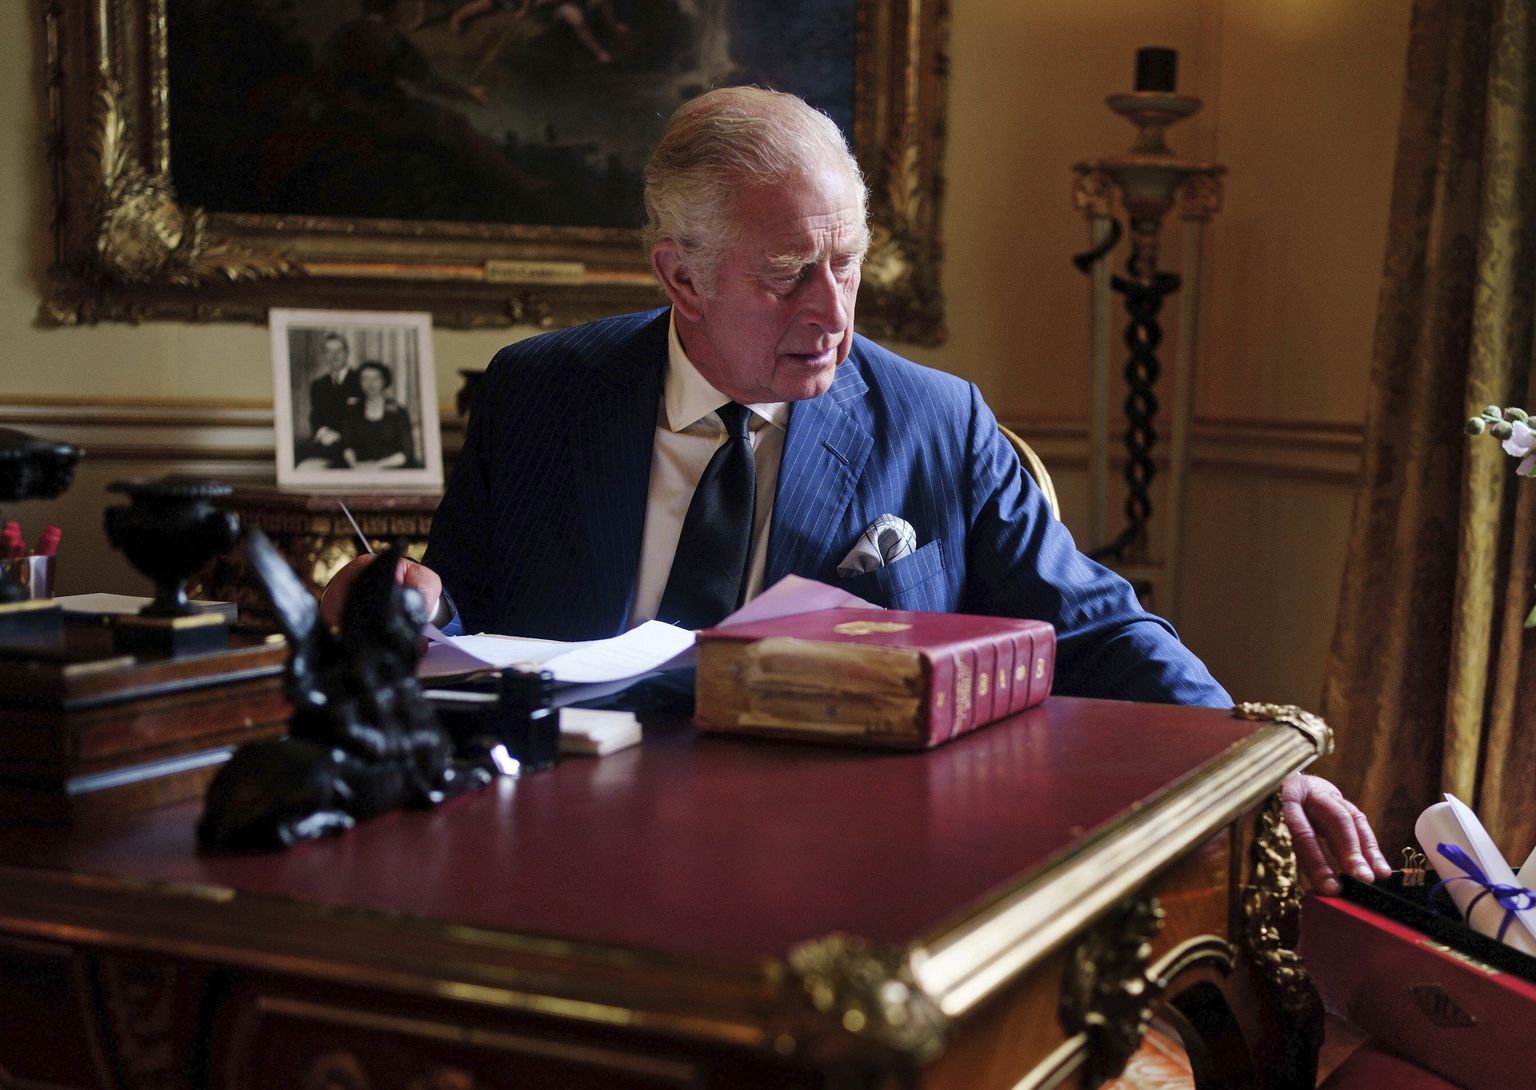 Briti kuningas Charles III tegelemas 11. septembril 2022 Londonis Buckinghami palees riigidokumentidega